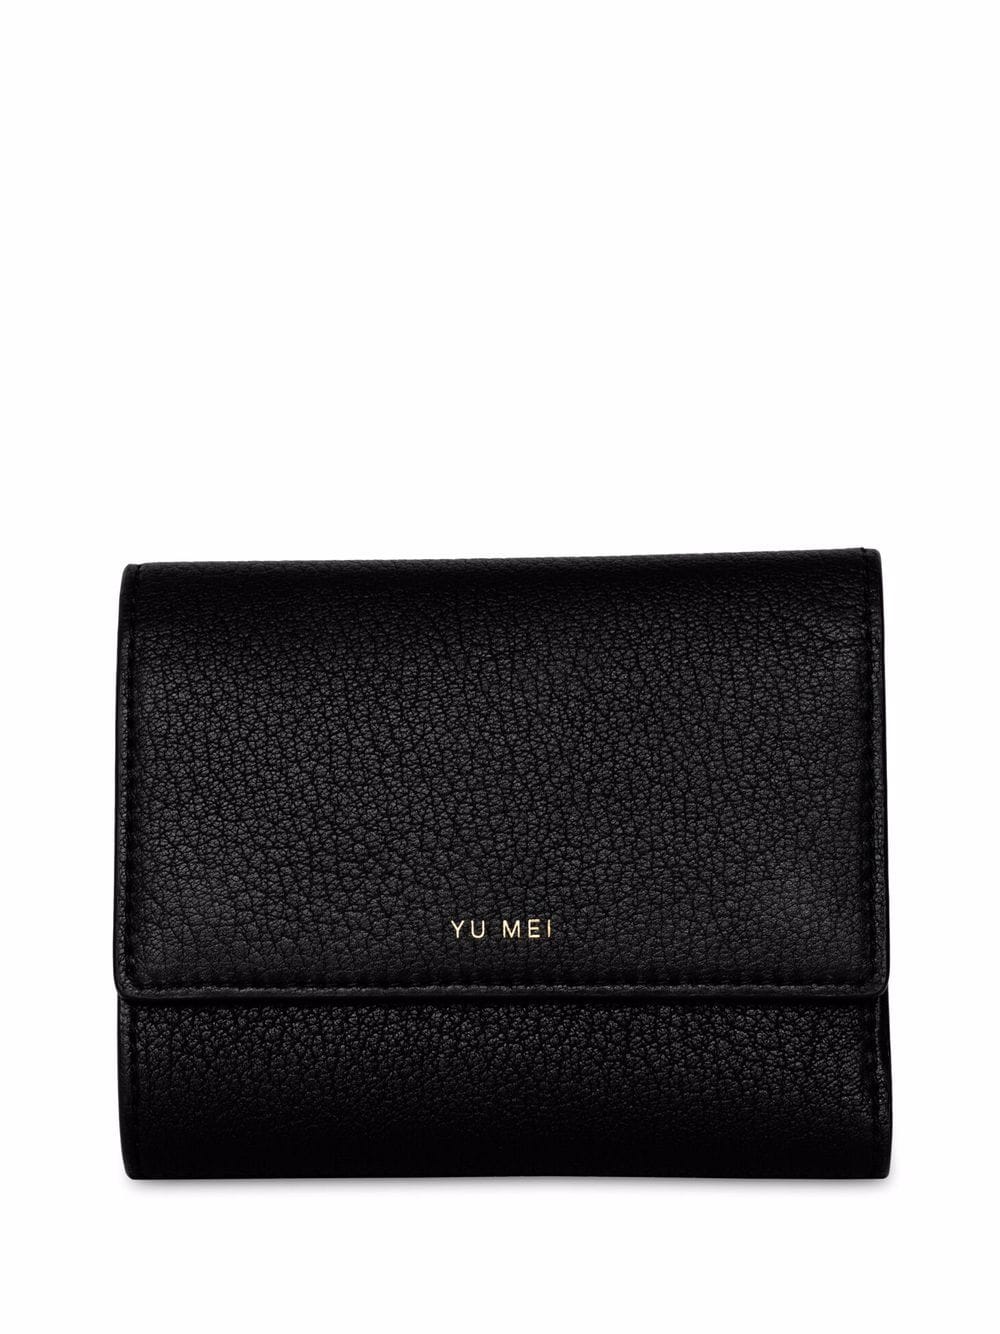 Yu Mei Grace leather wallet - Black von Yu Mei